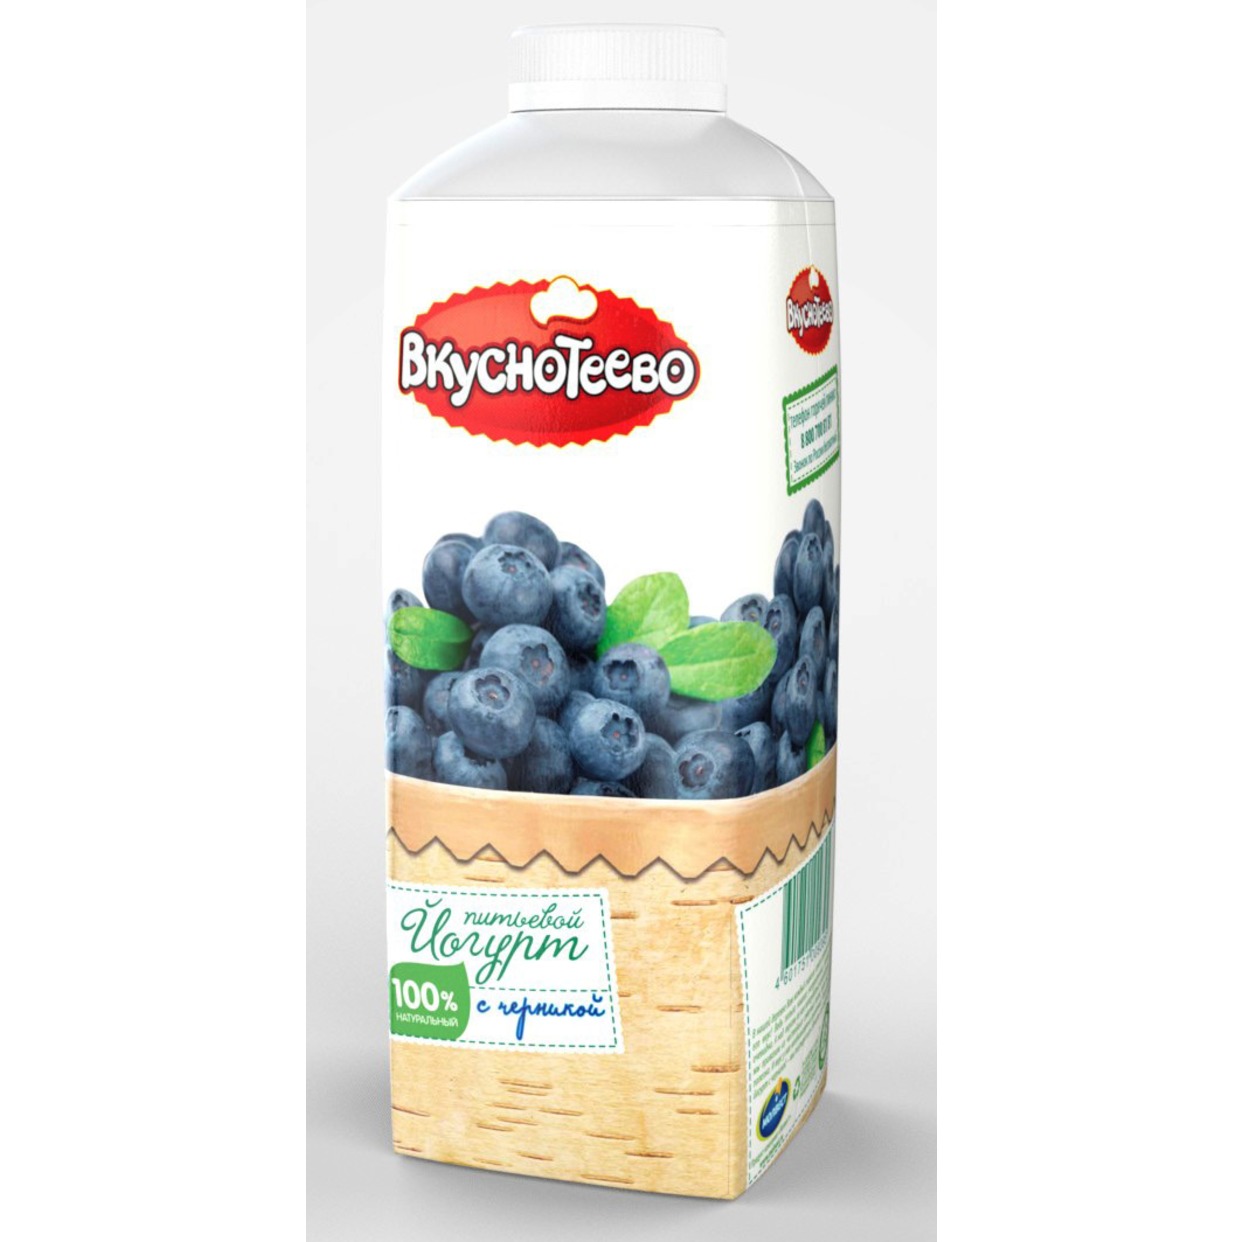 Йогурт Вкуснотеево питьевой с черникой 1,5% 750г